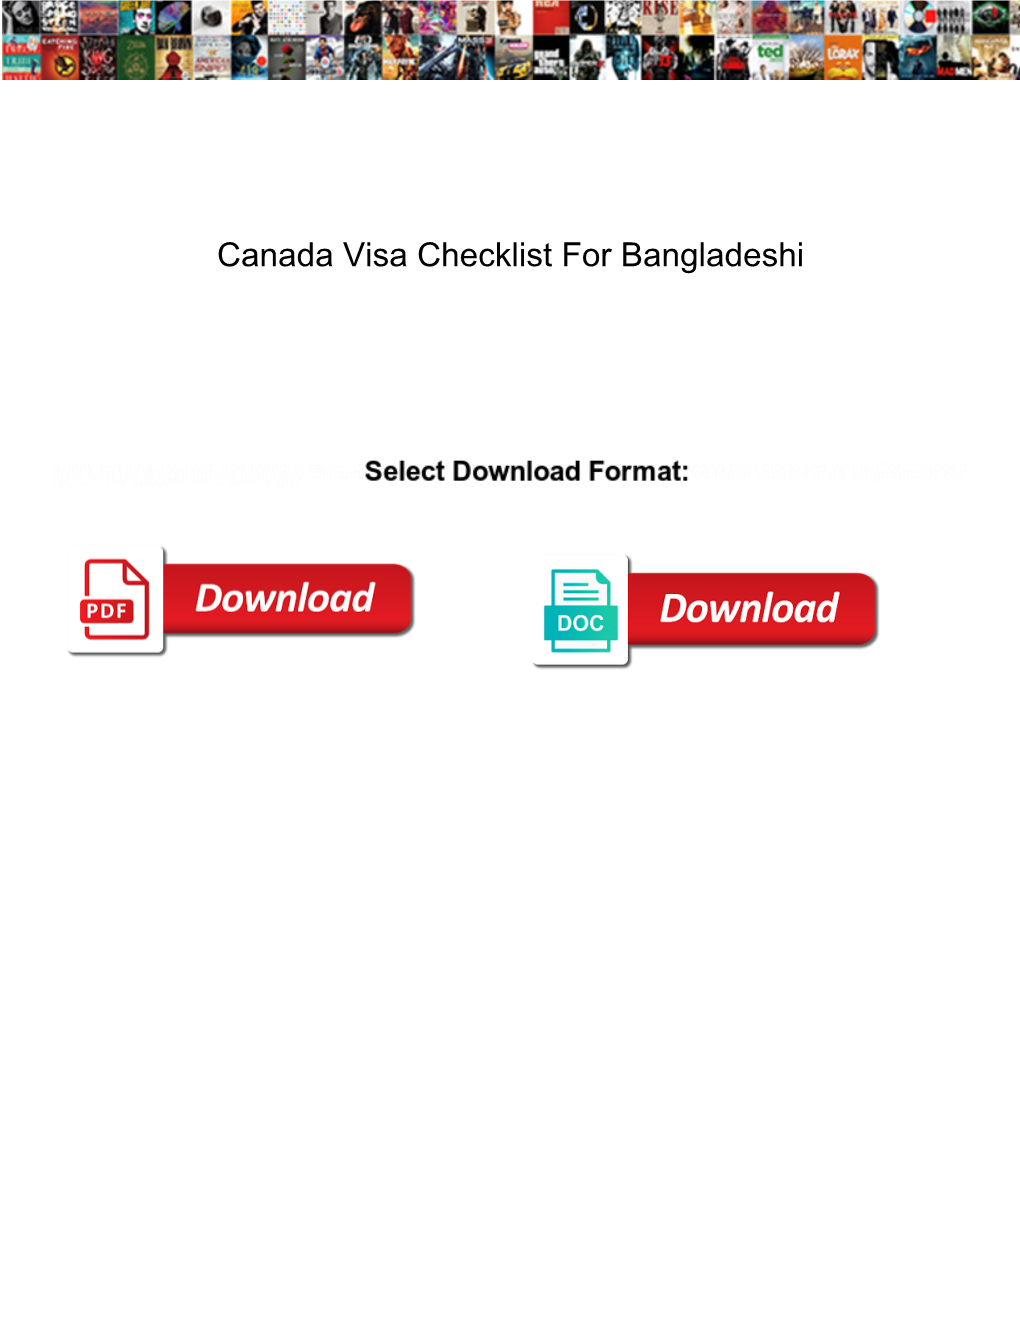 Canada Visa Checklist for Bangladeshi